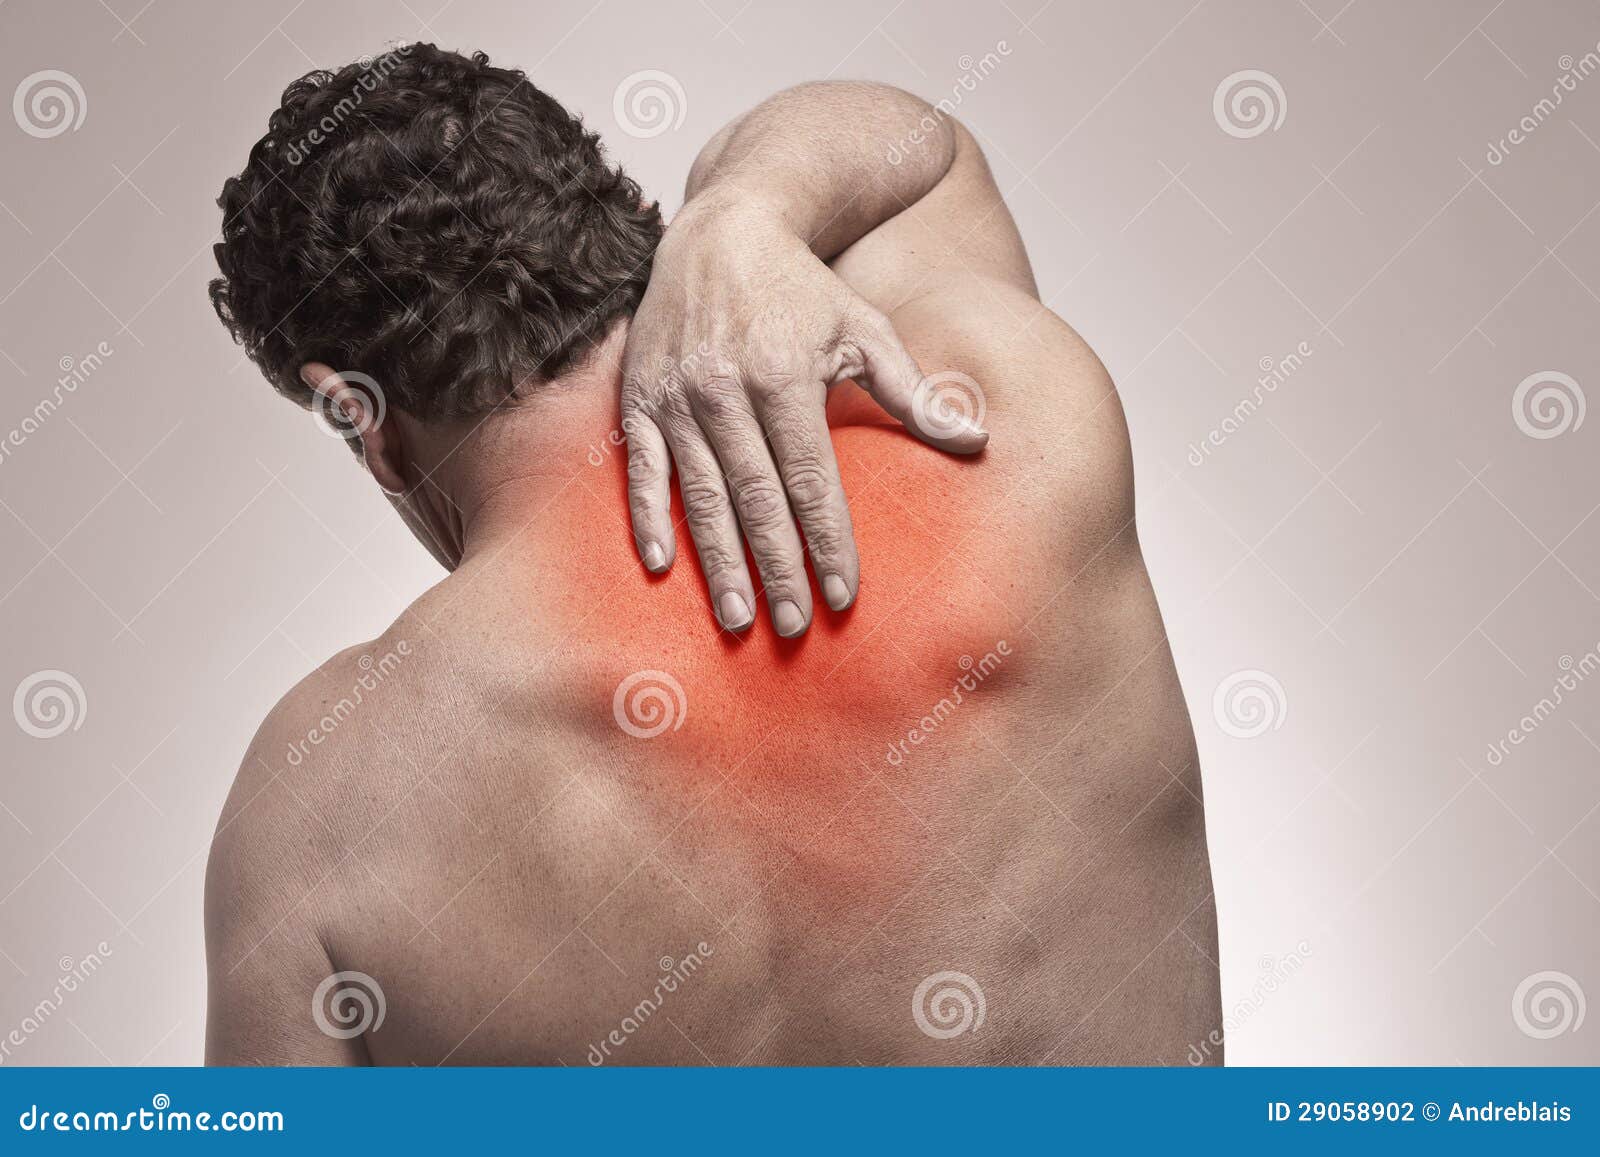 Πόνος στην πλάτη στοκ εικόνες. εικόνα από bodybuilders - 29058902